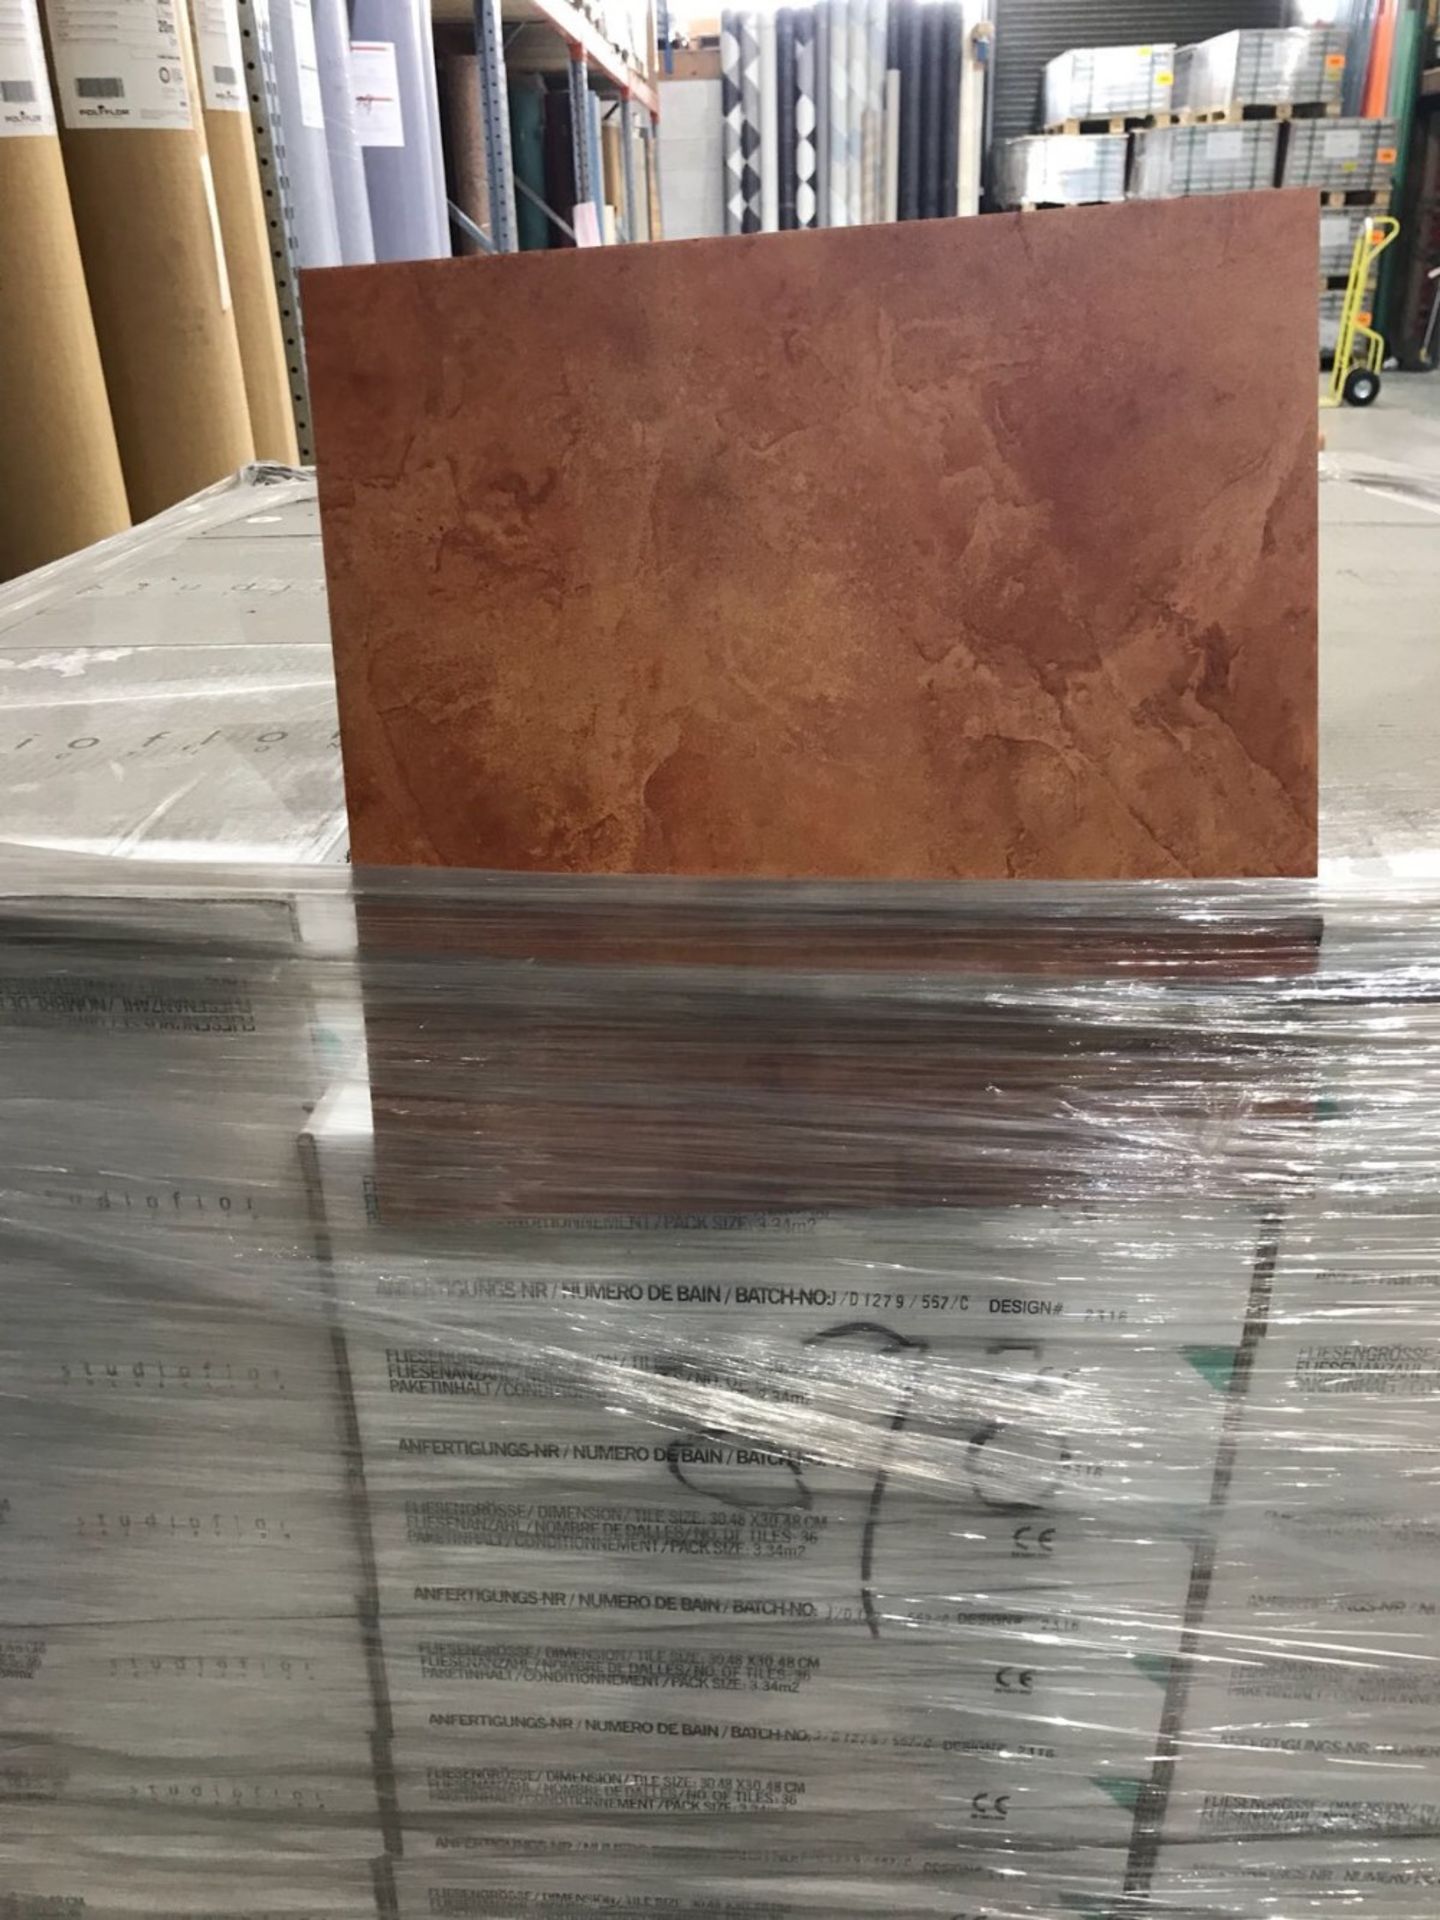 Polyflor Expona Studio Floor Terracotta Tiles - 12” x 12” – NO VAT3.34m2 per box – 6 Boxes -20.